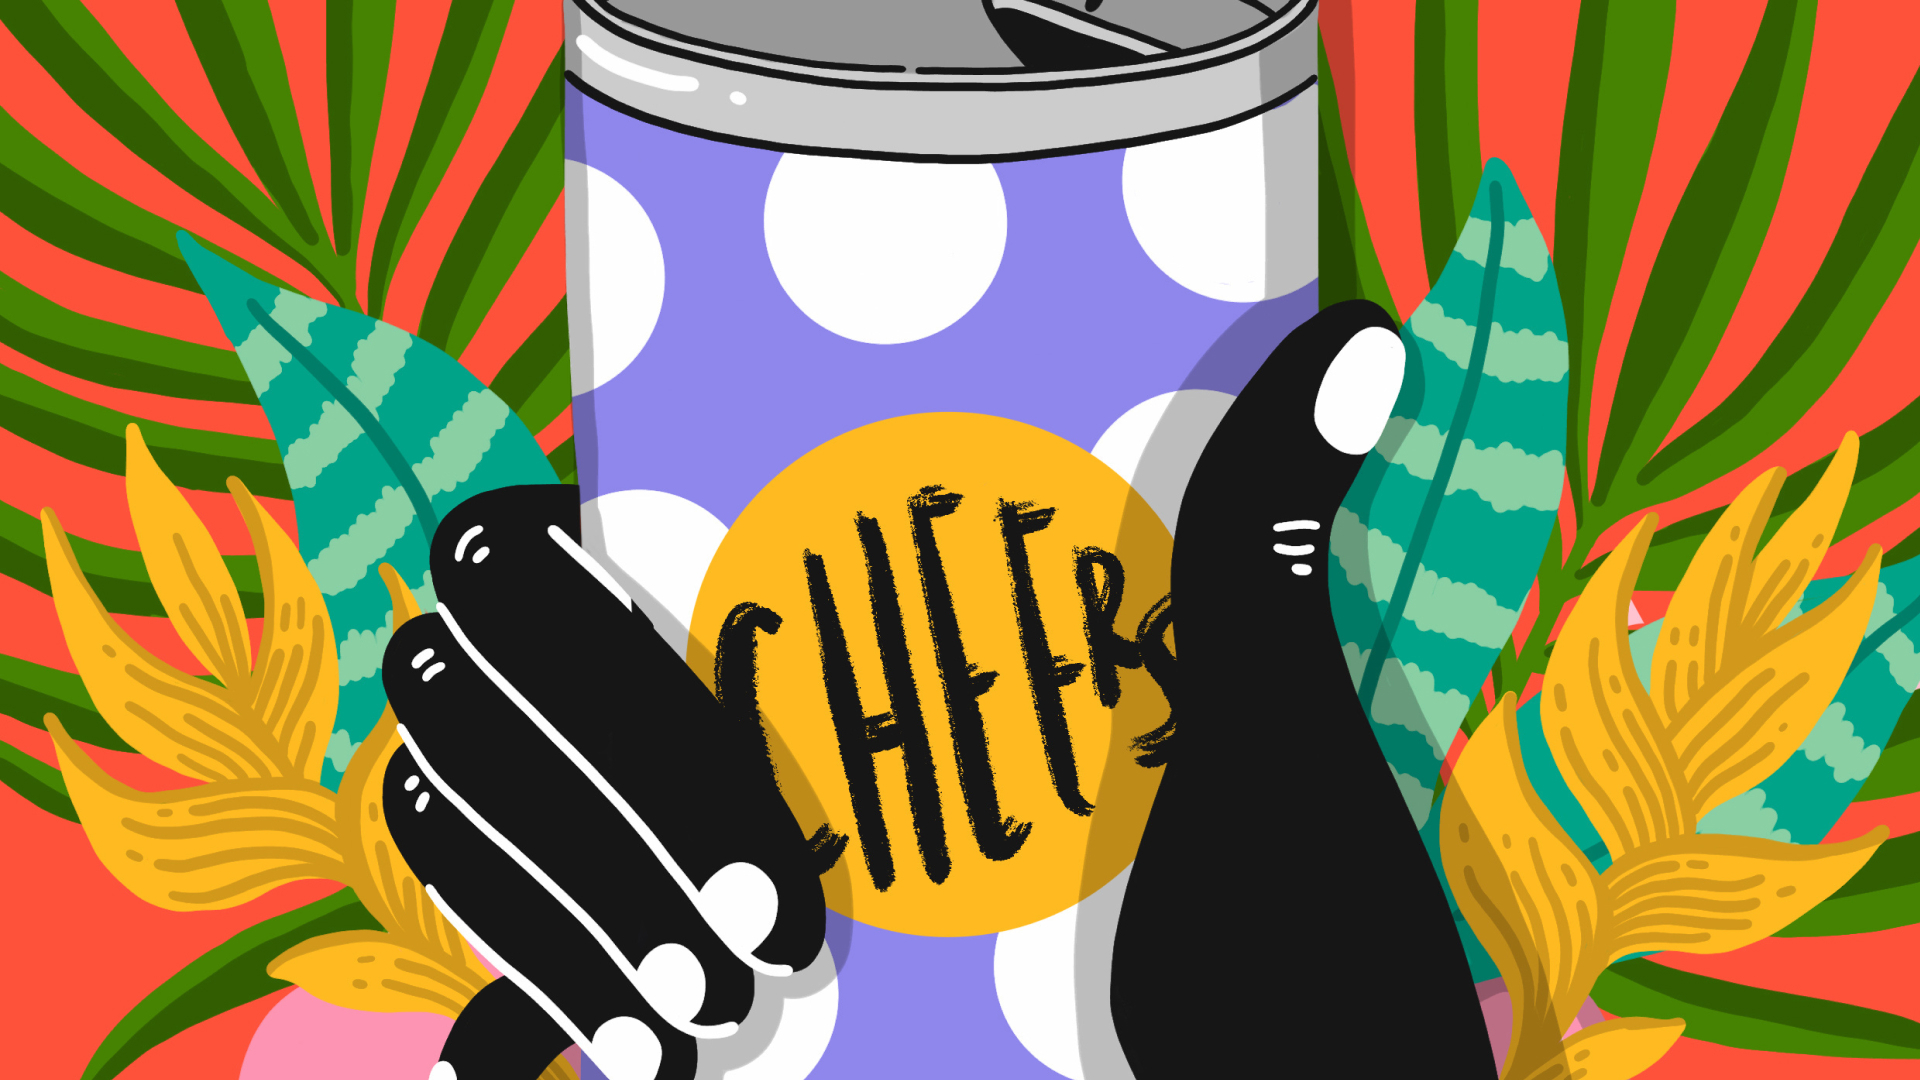 Farverig illustration af en hånd, der holder en dåse, hvorpå der står "cheers".